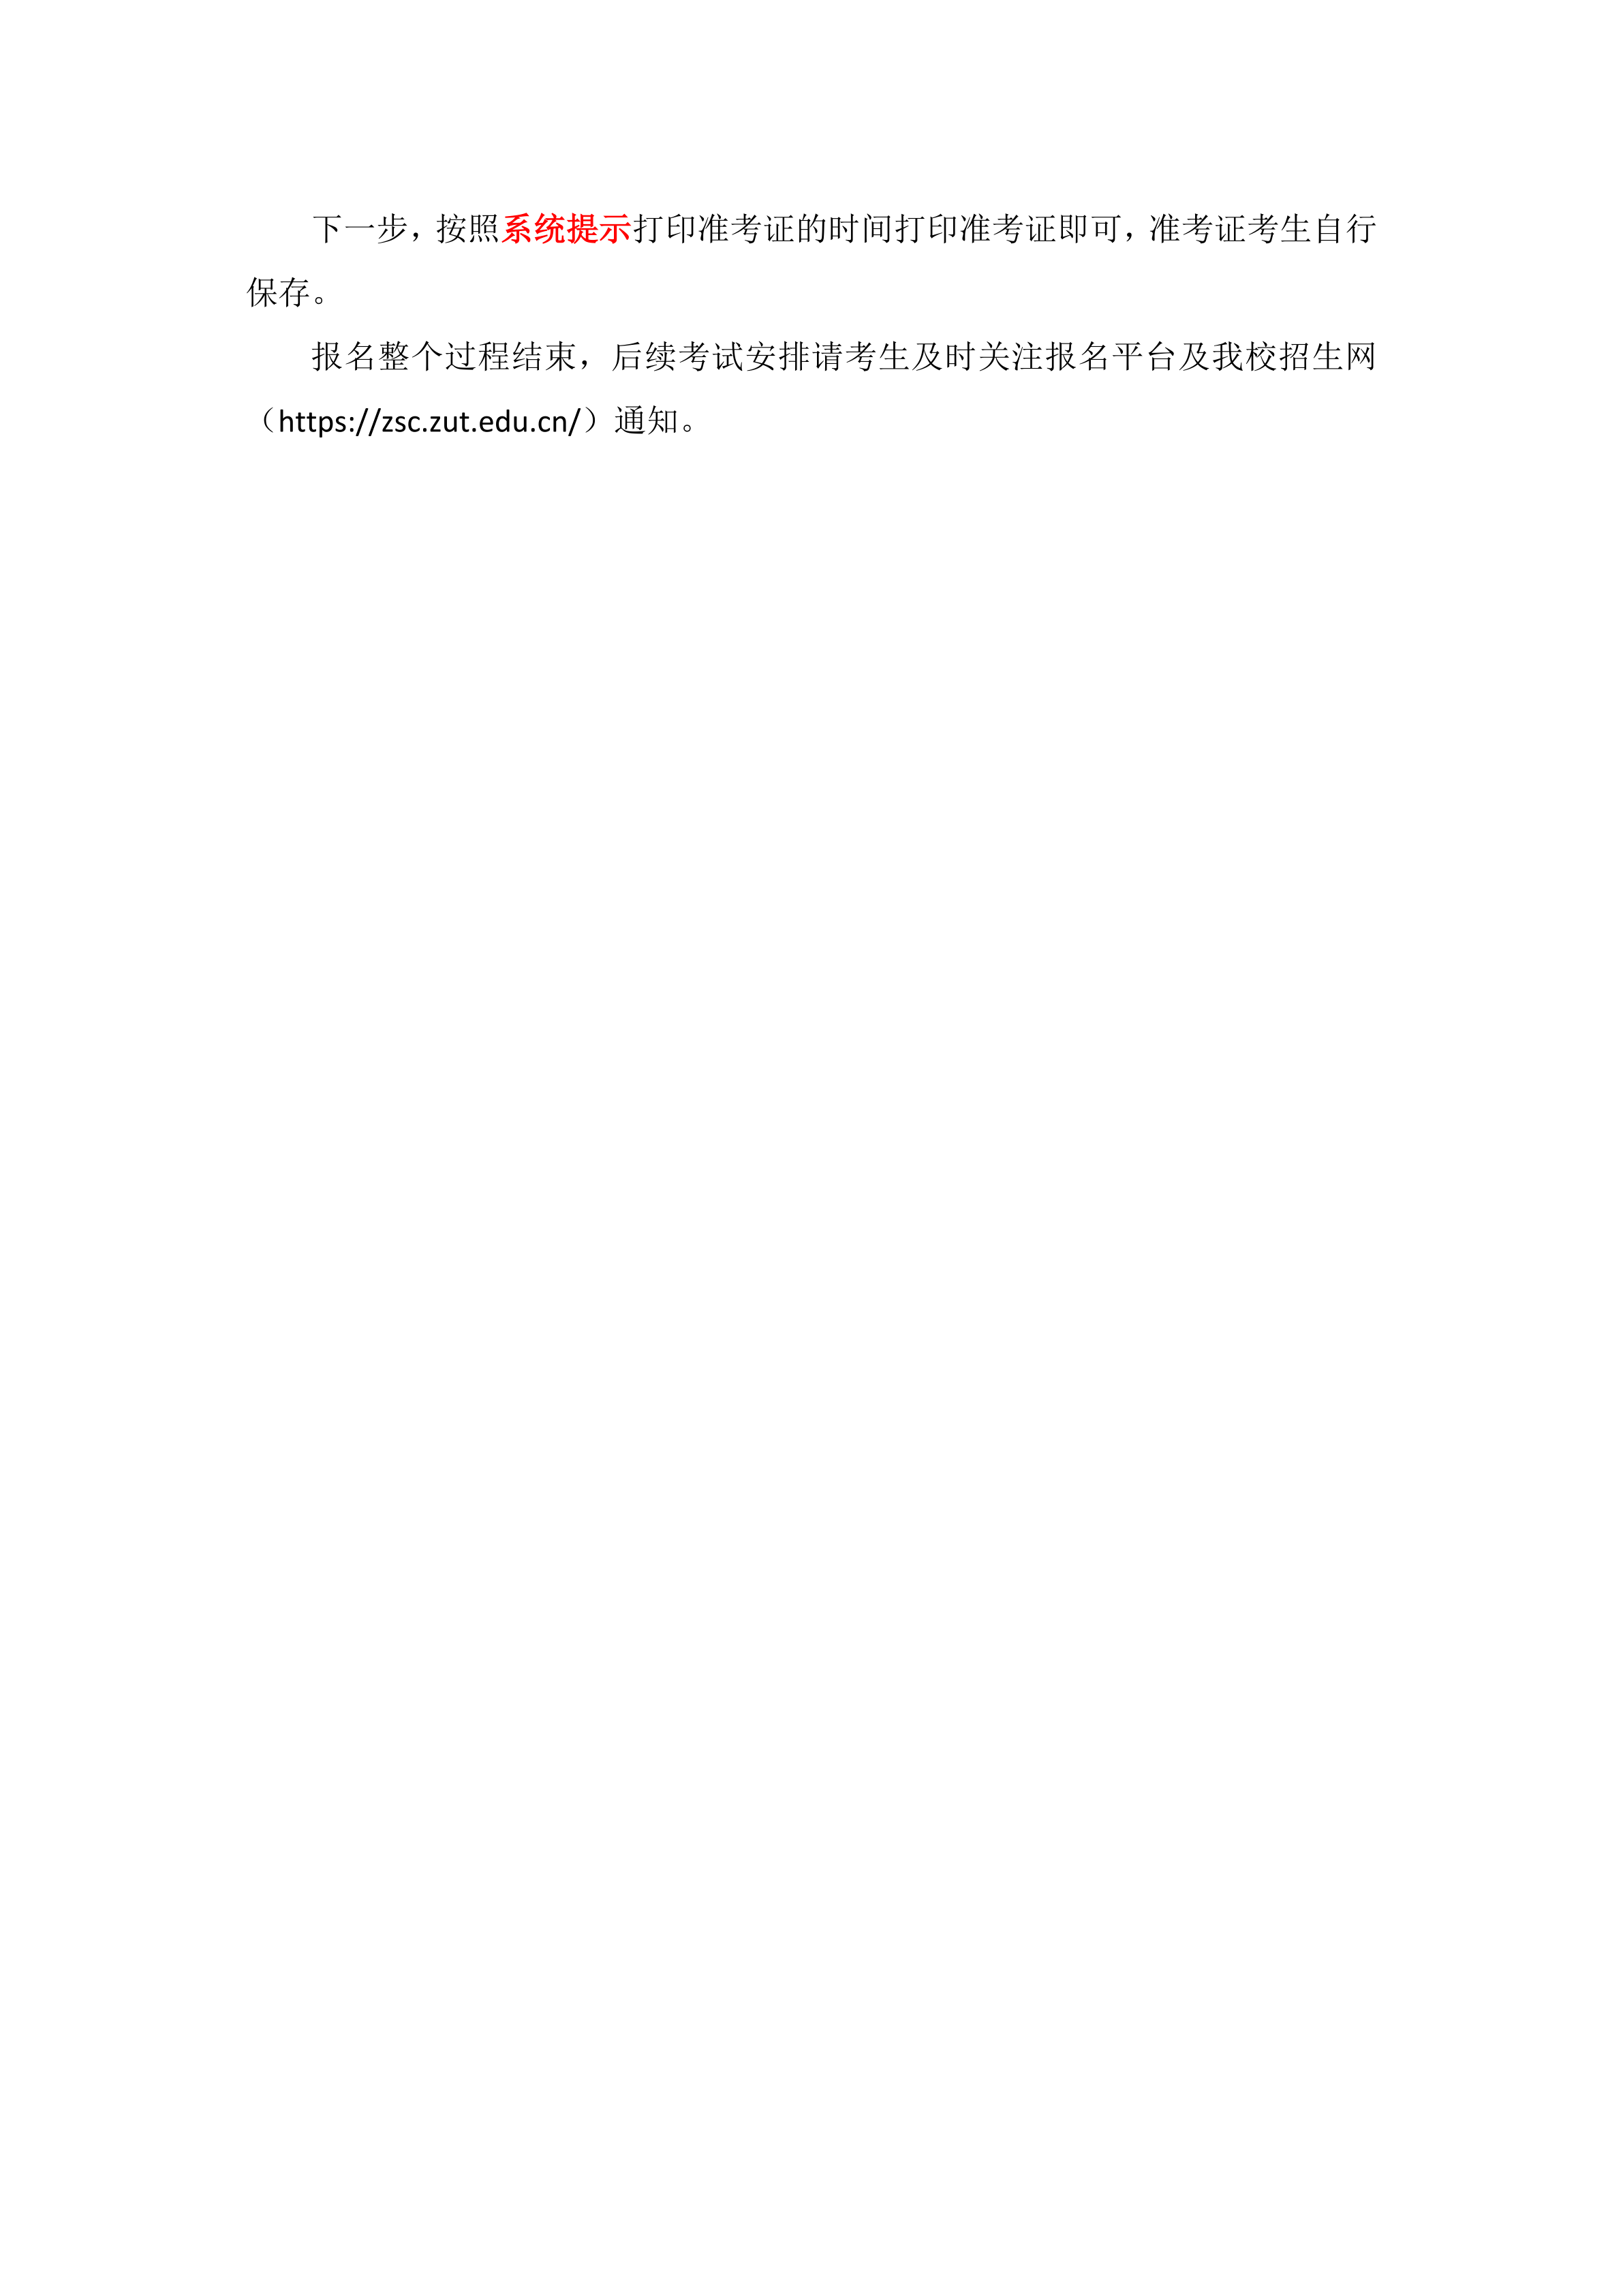 中原工学院表演专业网上报名流程(1)_13.png